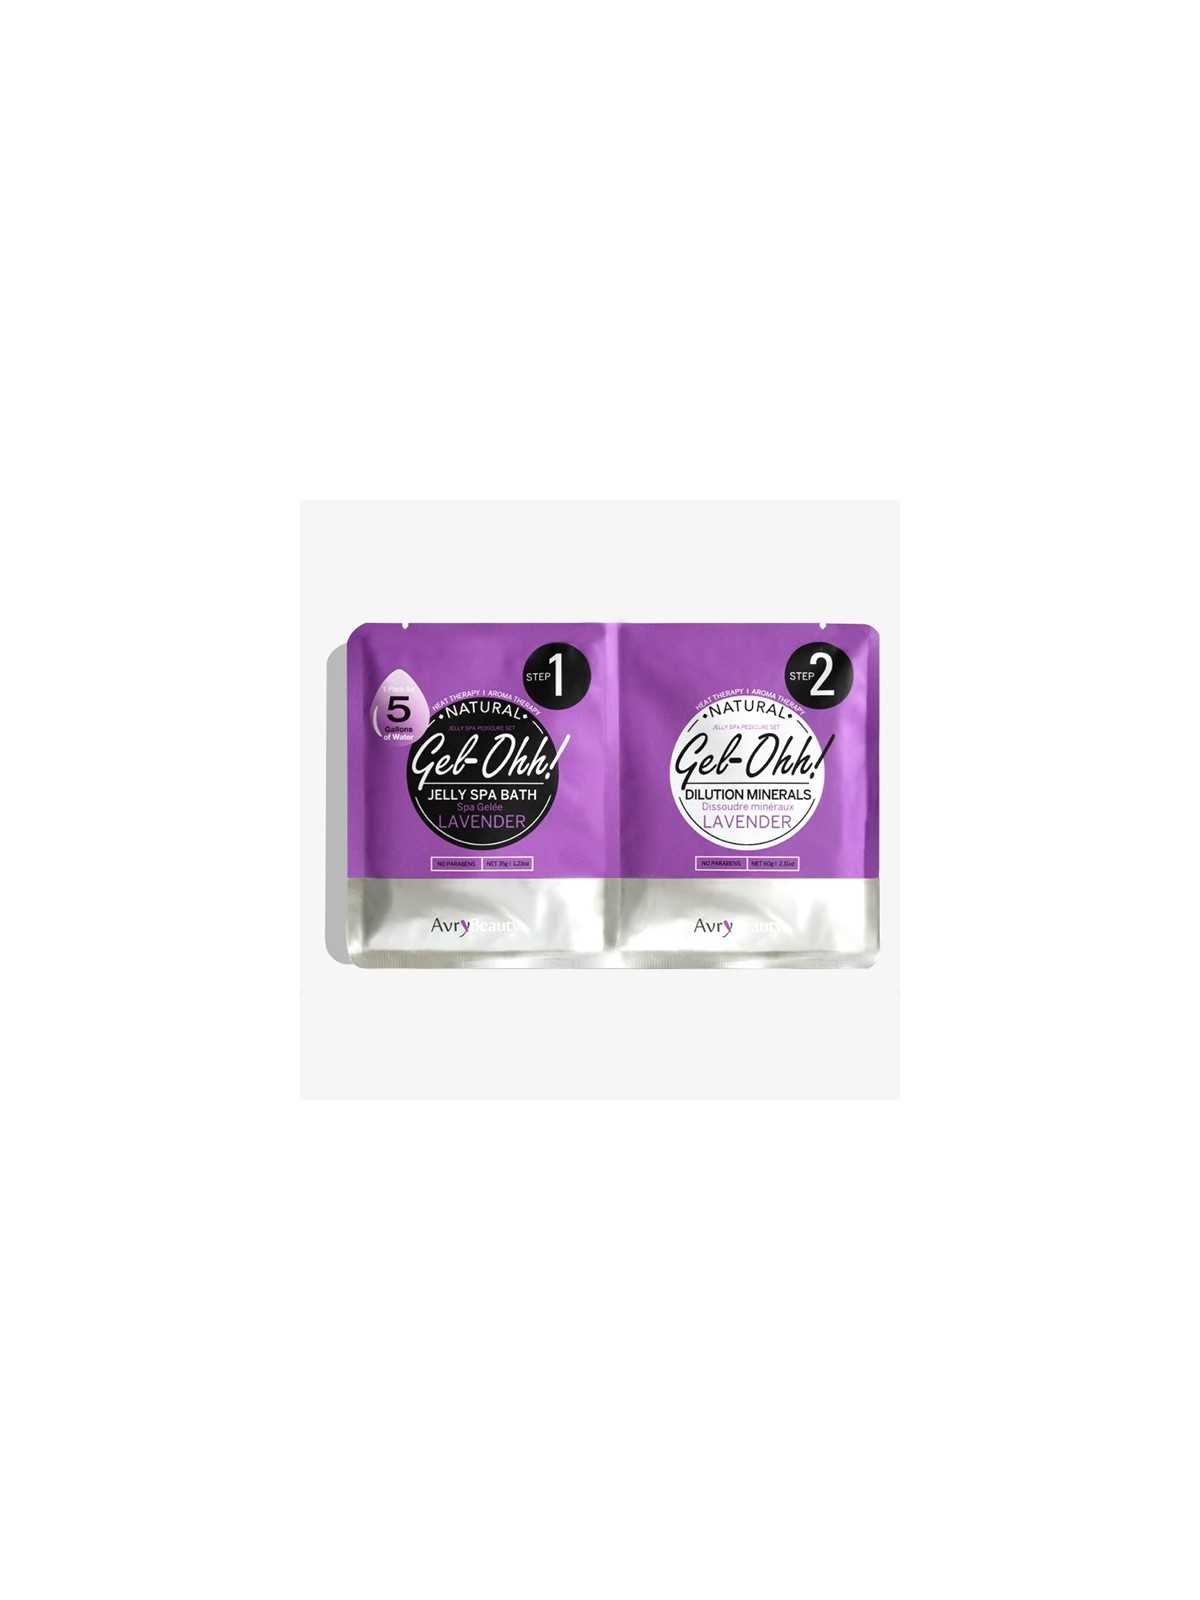 Comprar Jelly spa – Gel ohh Lavanda en Pedicura por sólo 5,20 € o un precio específico de 5,20 € en Thalie Care